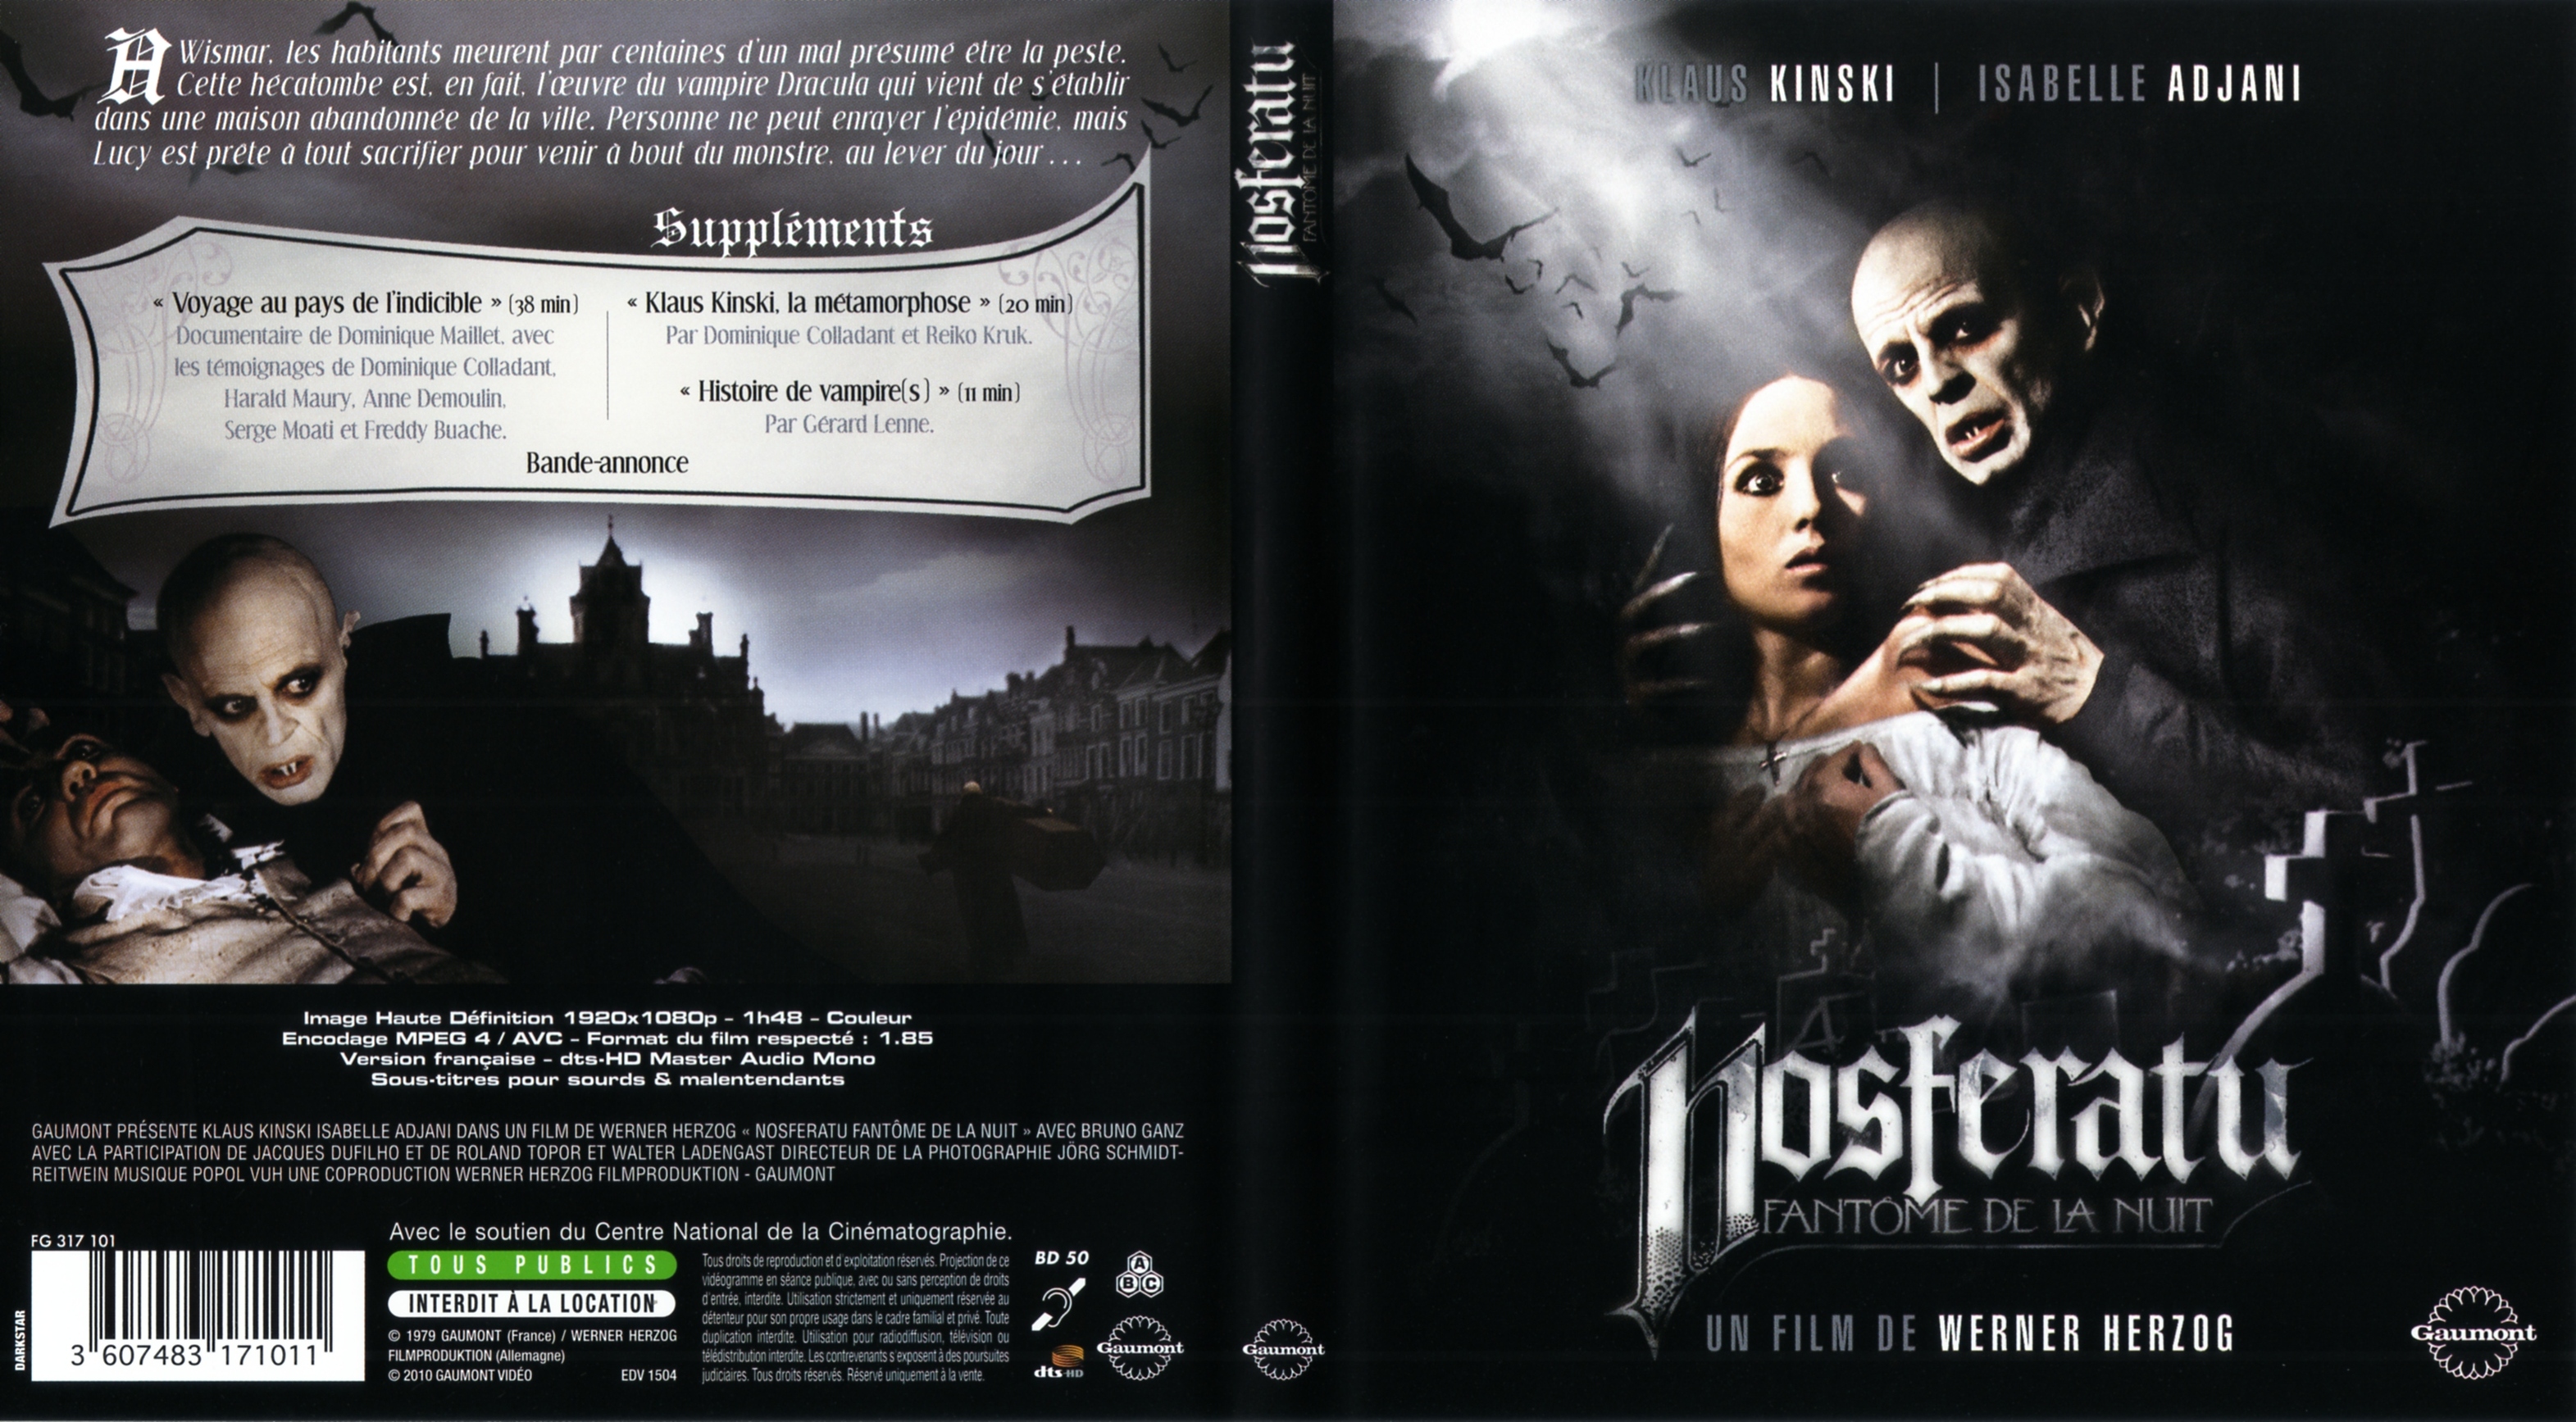 Jaquette DVD Nosferatu Fantome de la nuit (BLU-RAY)